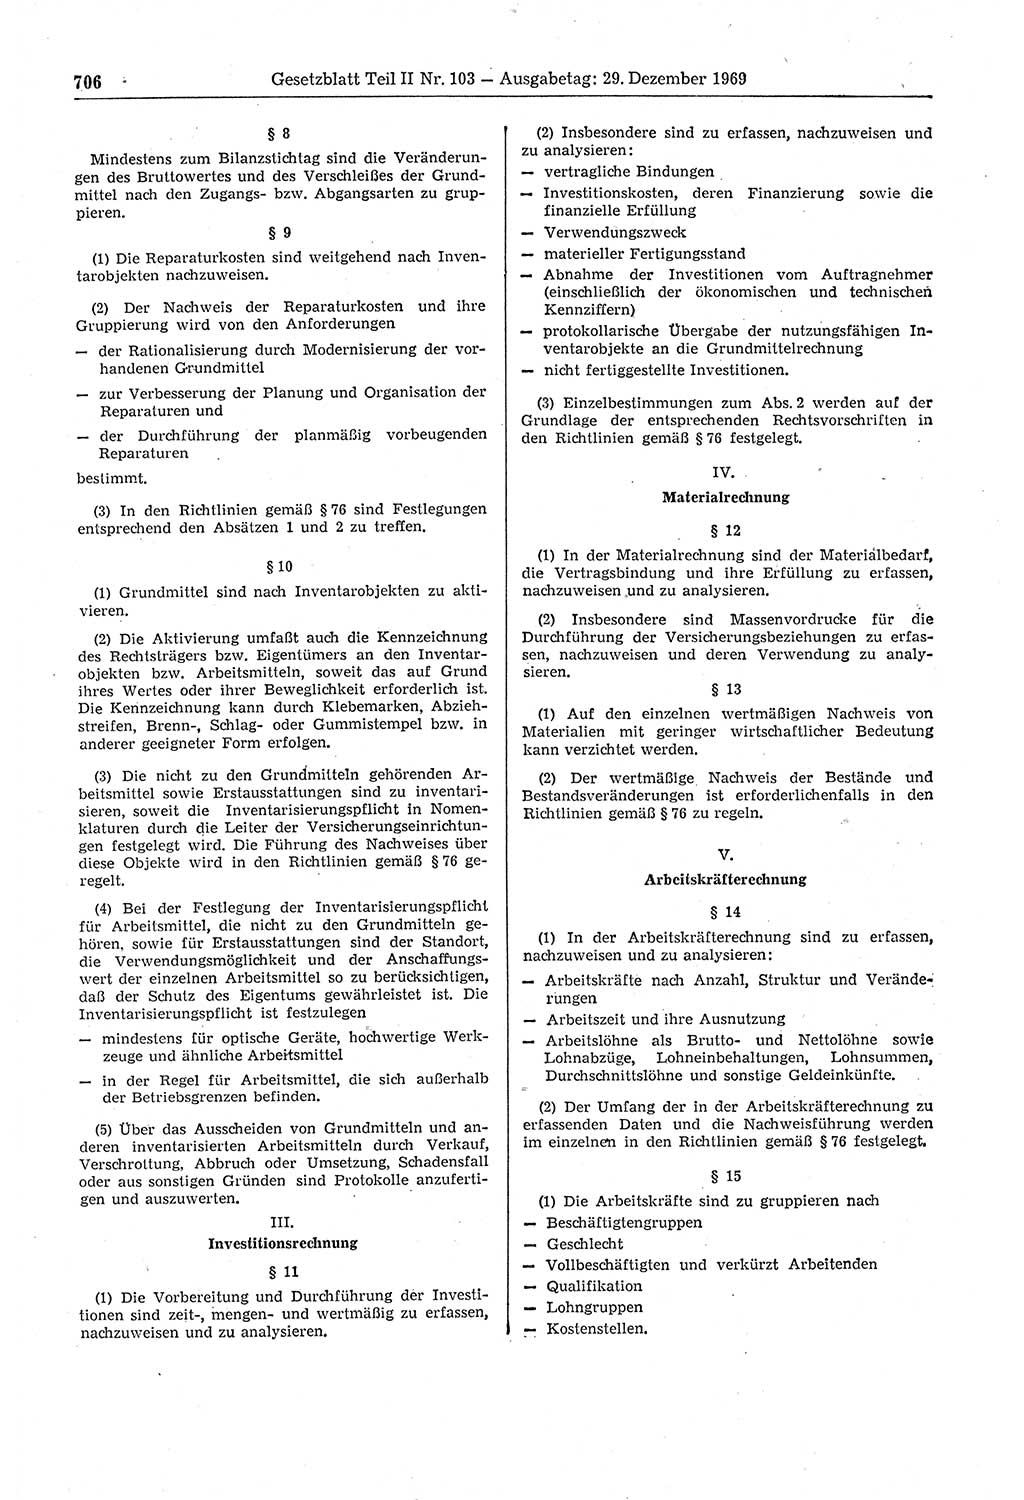 Gesetzblatt (GBl.) der Deutschen Demokratischen Republik (DDR) Teil ⅠⅠ 1969, Seite 706 (GBl. DDR ⅠⅠ 1969, S. 706)